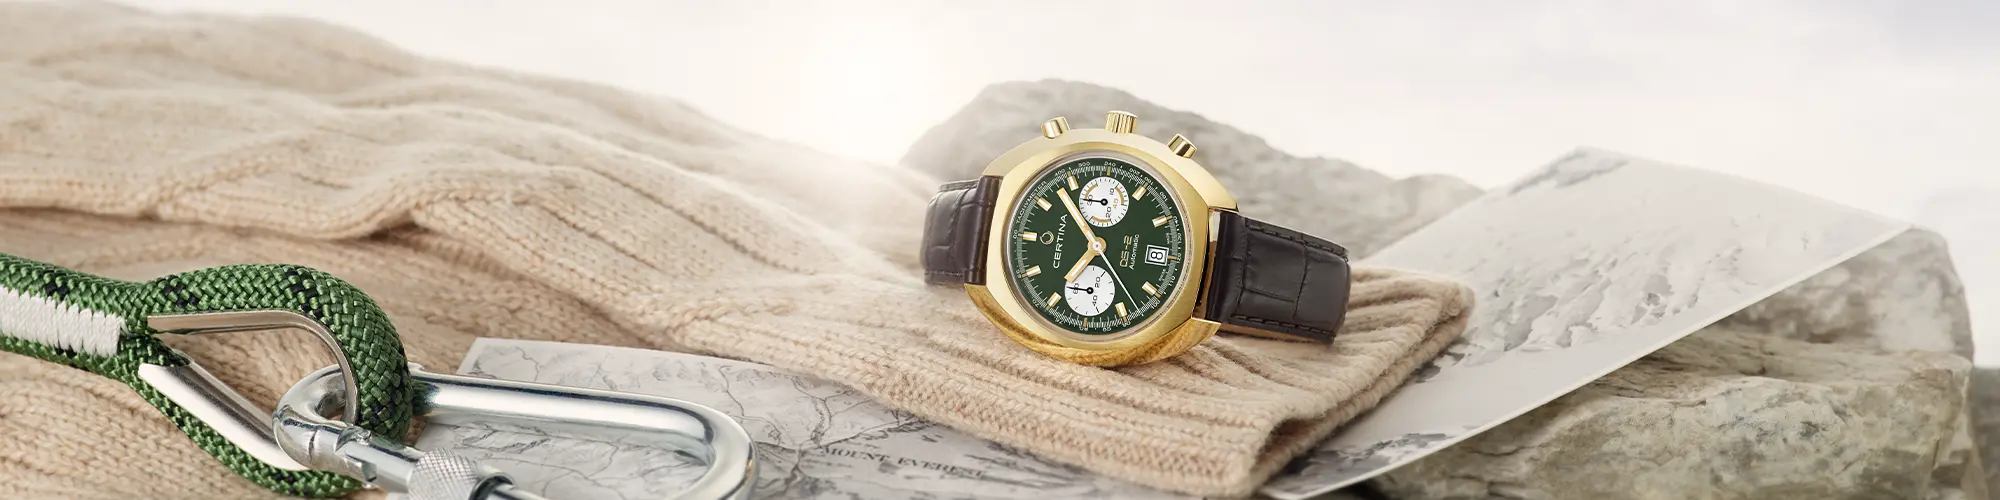 Armbandsur från Certina Made in Swiss kvalitet klockor